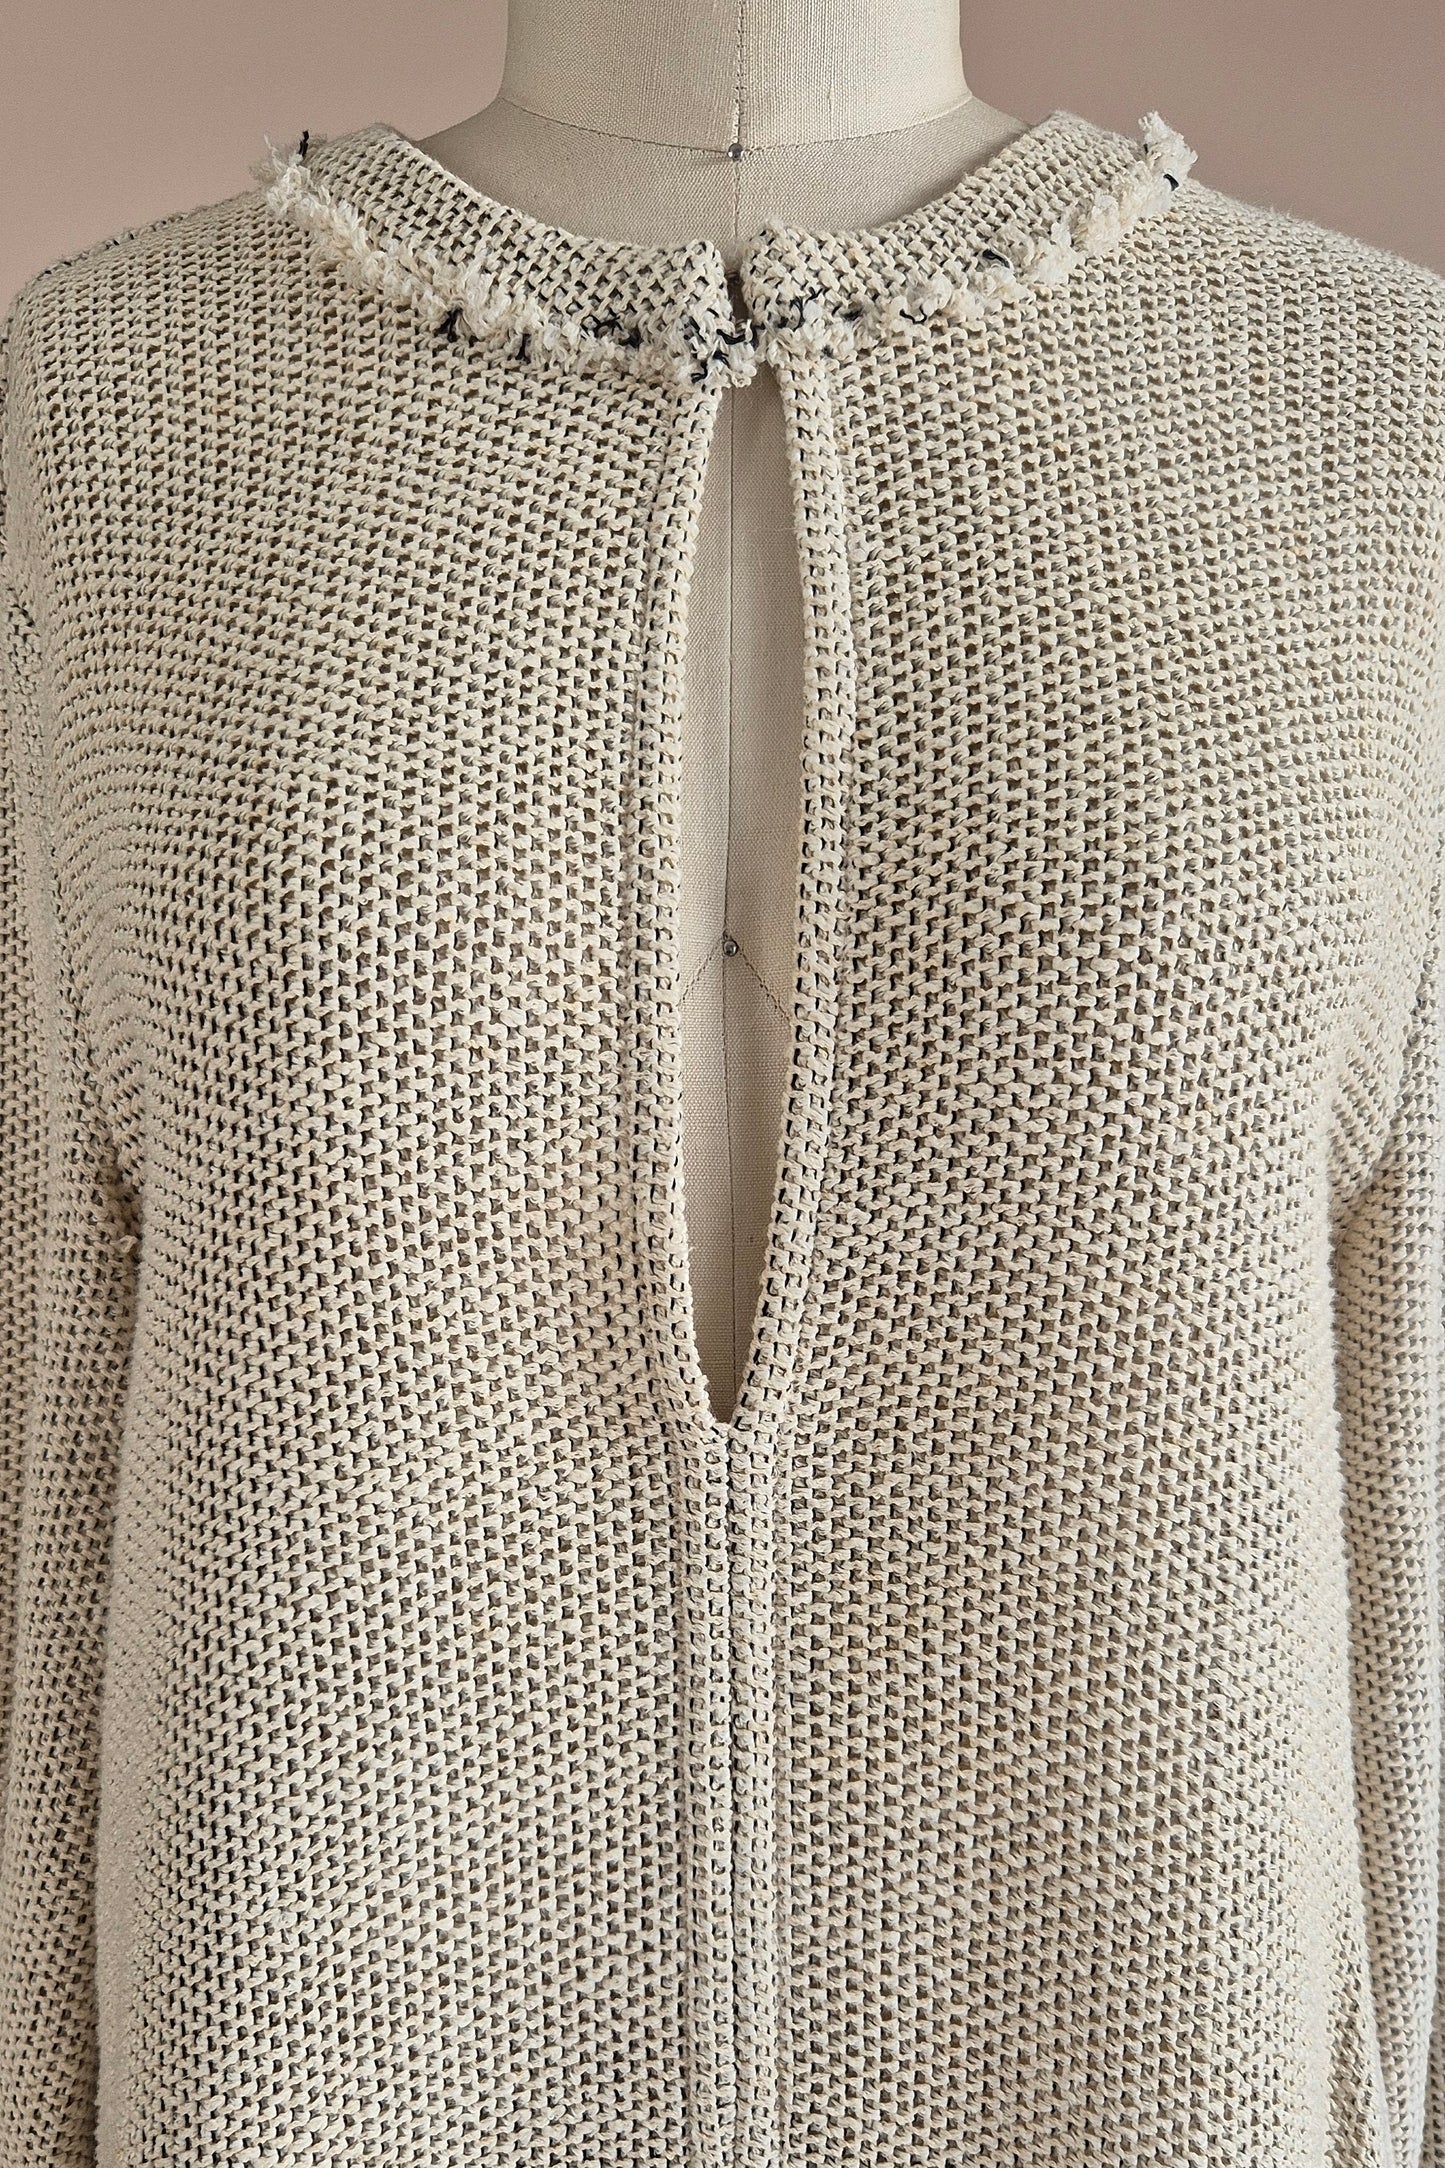 Amazing knit tunic from IRO Size S